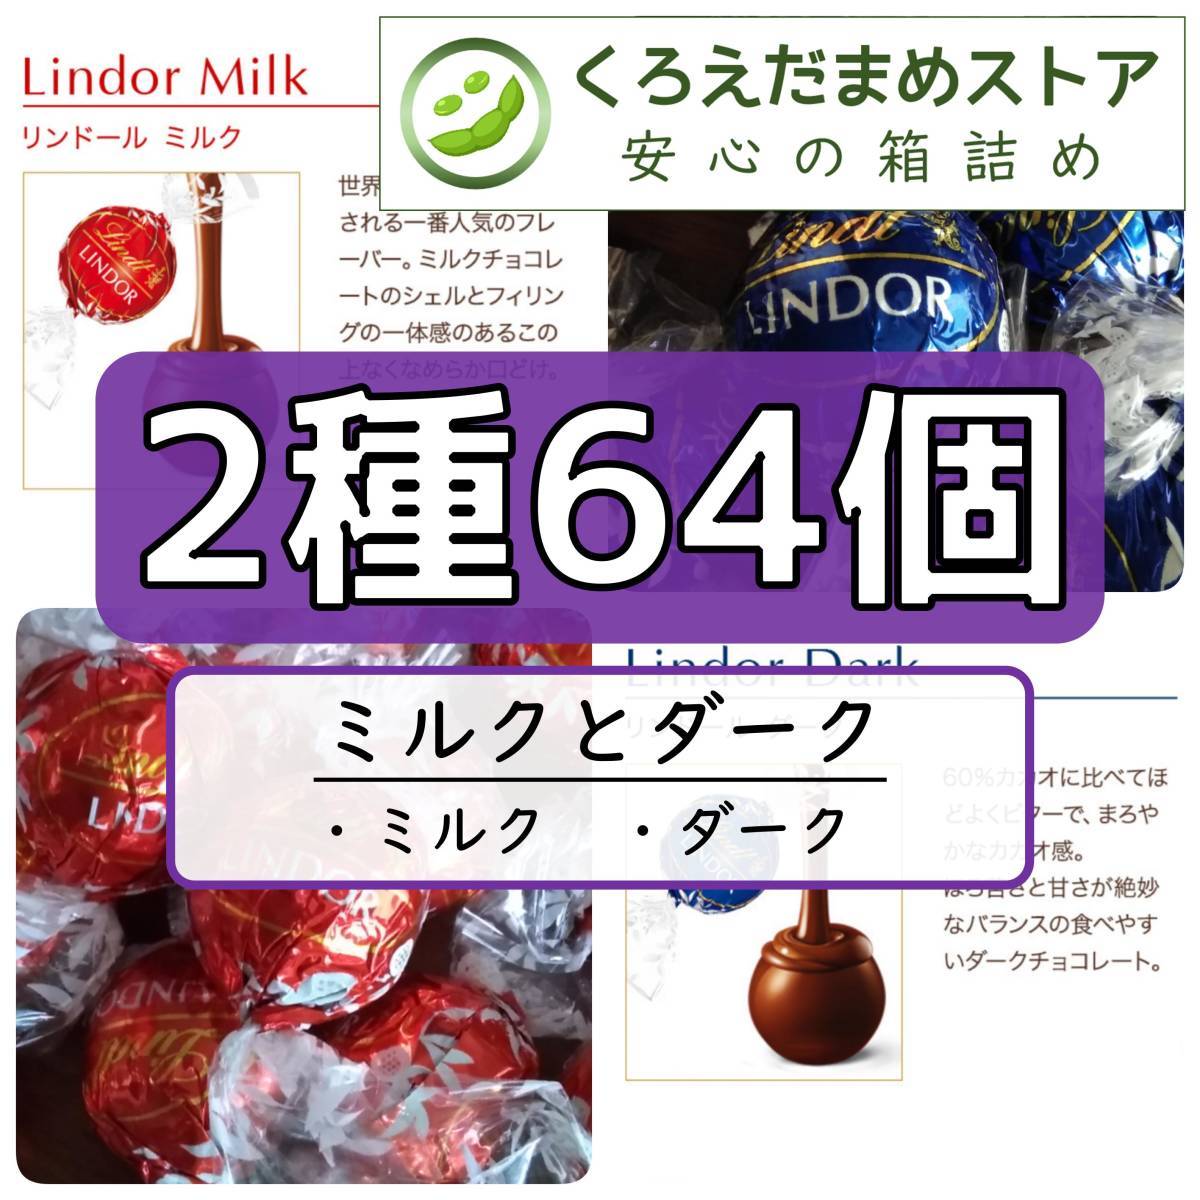 【箱詰・スピード発送】MD64 ミルクとダーク 64個 リンツ リンドール チョコレート ジップ袋詰 ダンボール箱梱包 送料無料 くろえだまめ_画像1